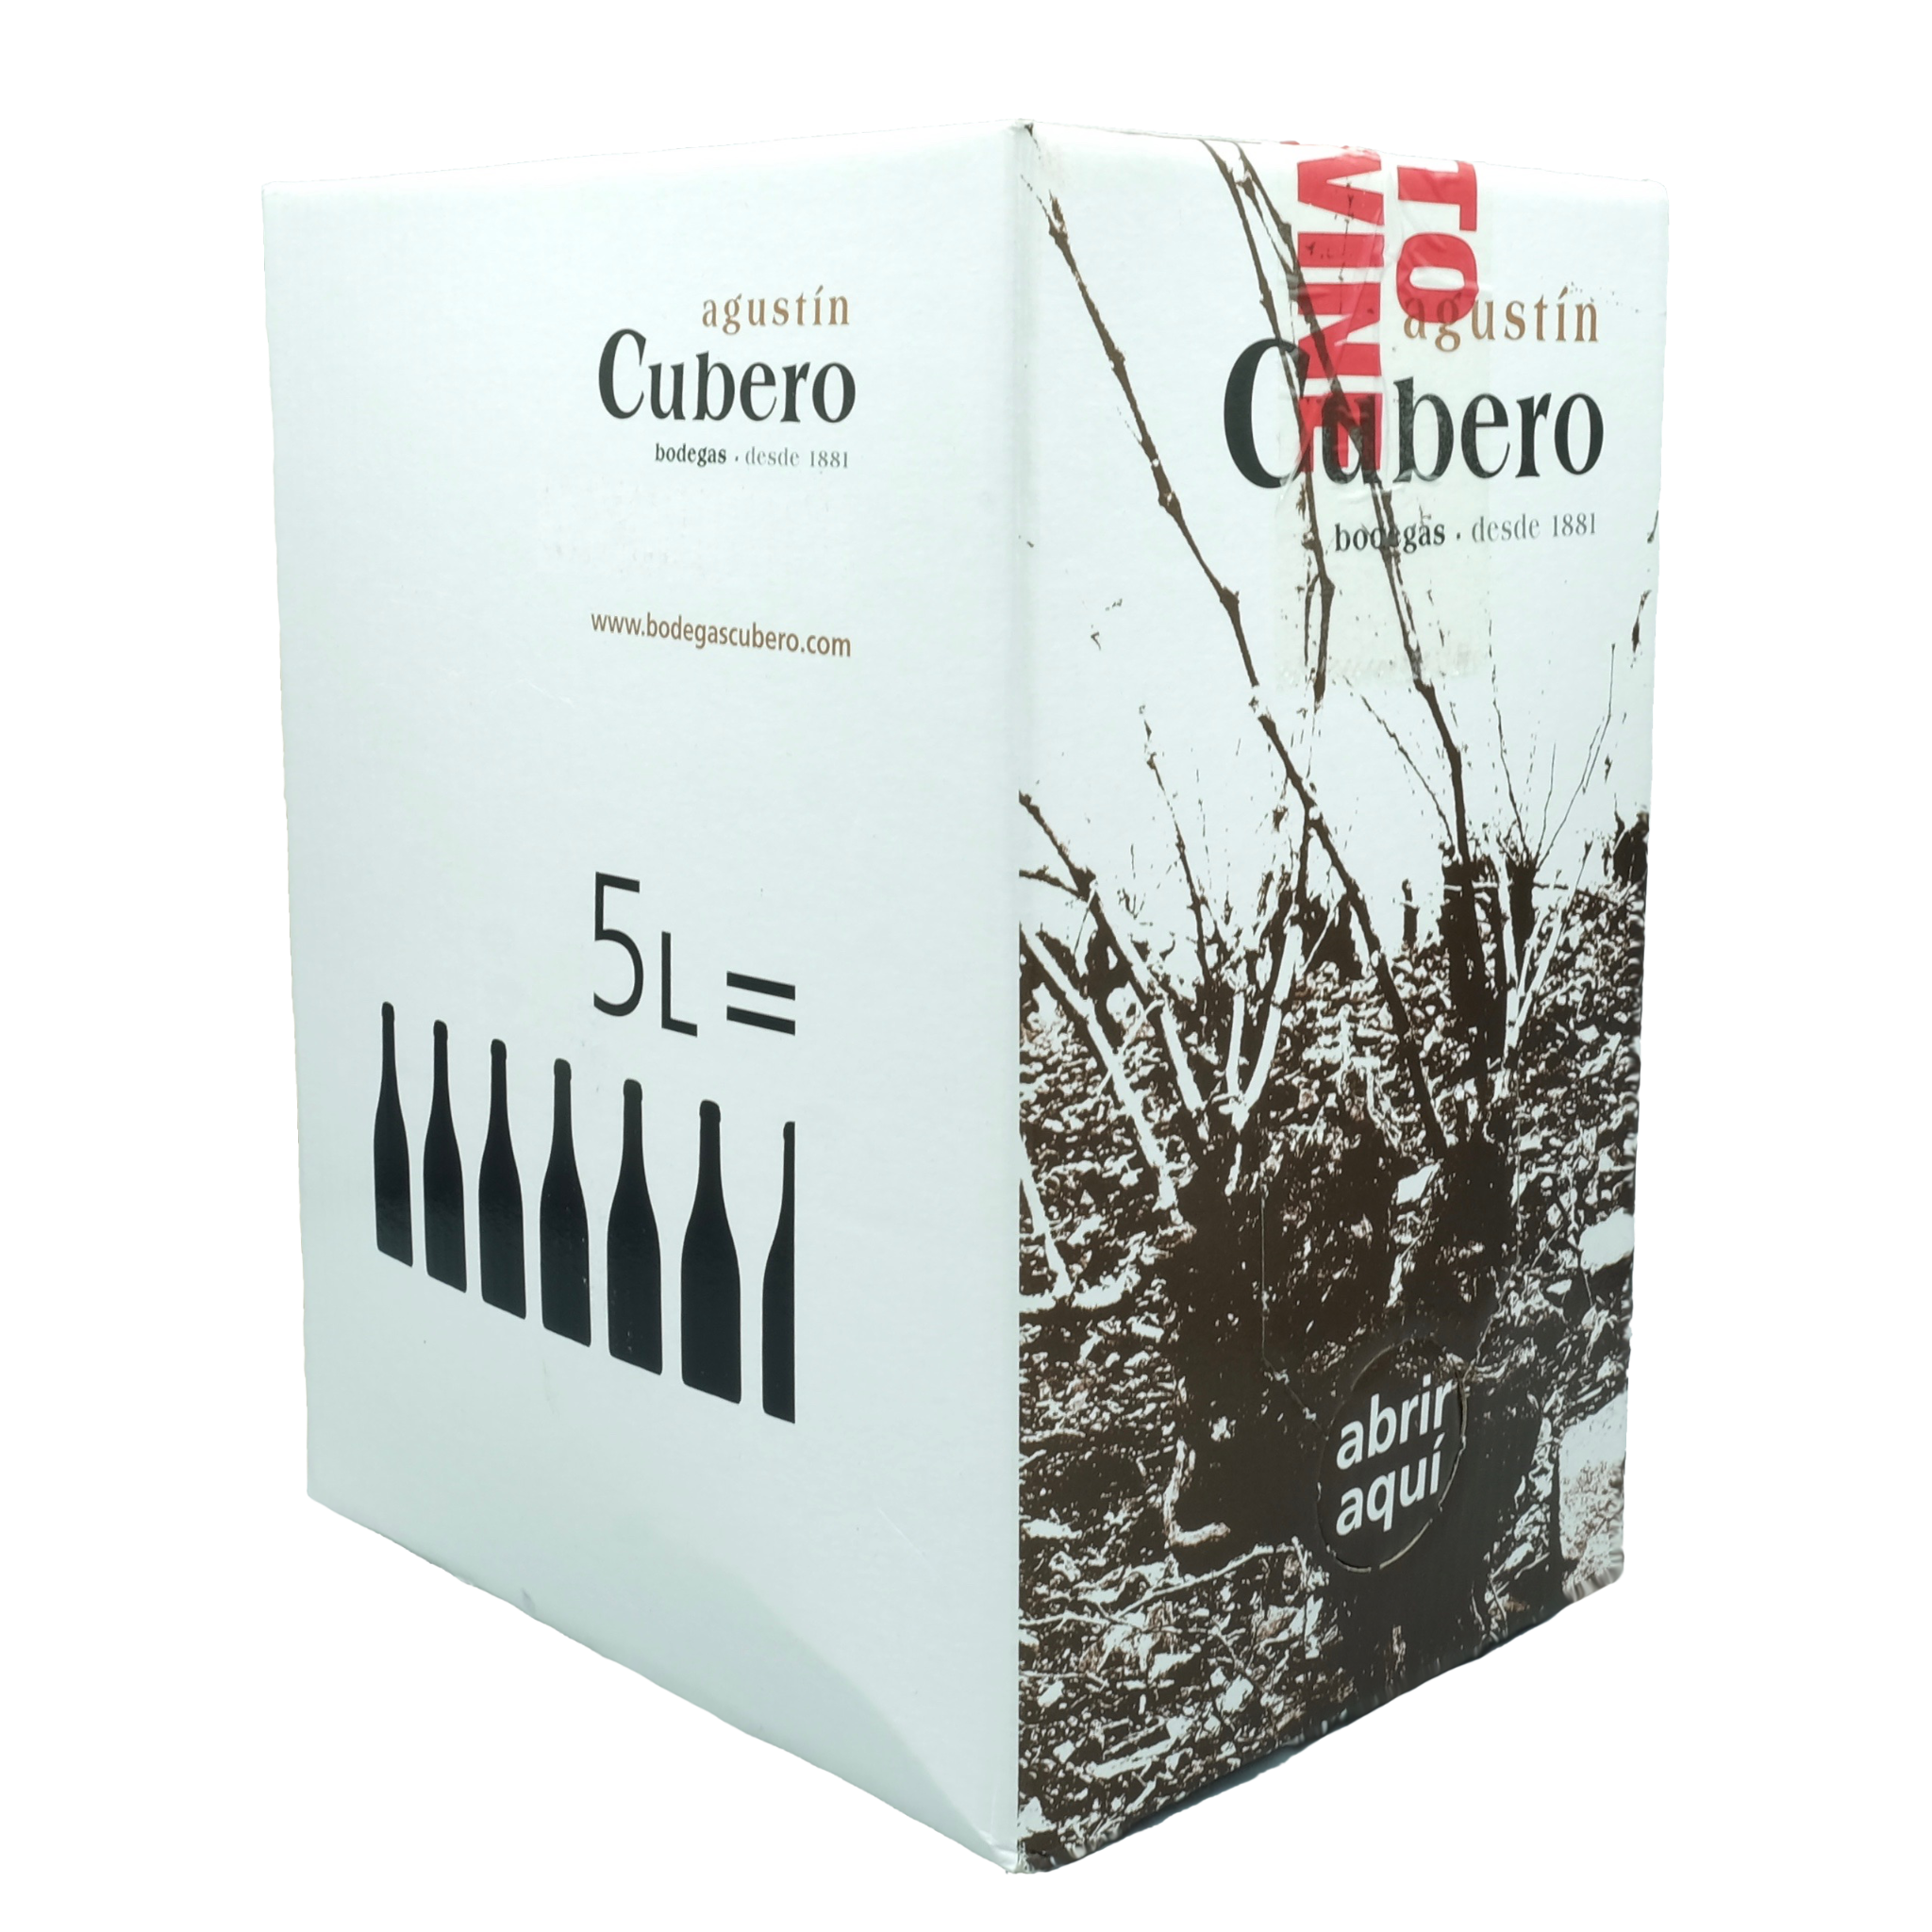 Vino Bianco Agustin Cubero 5 Liter Bag in Box Wein – Rebenzeit